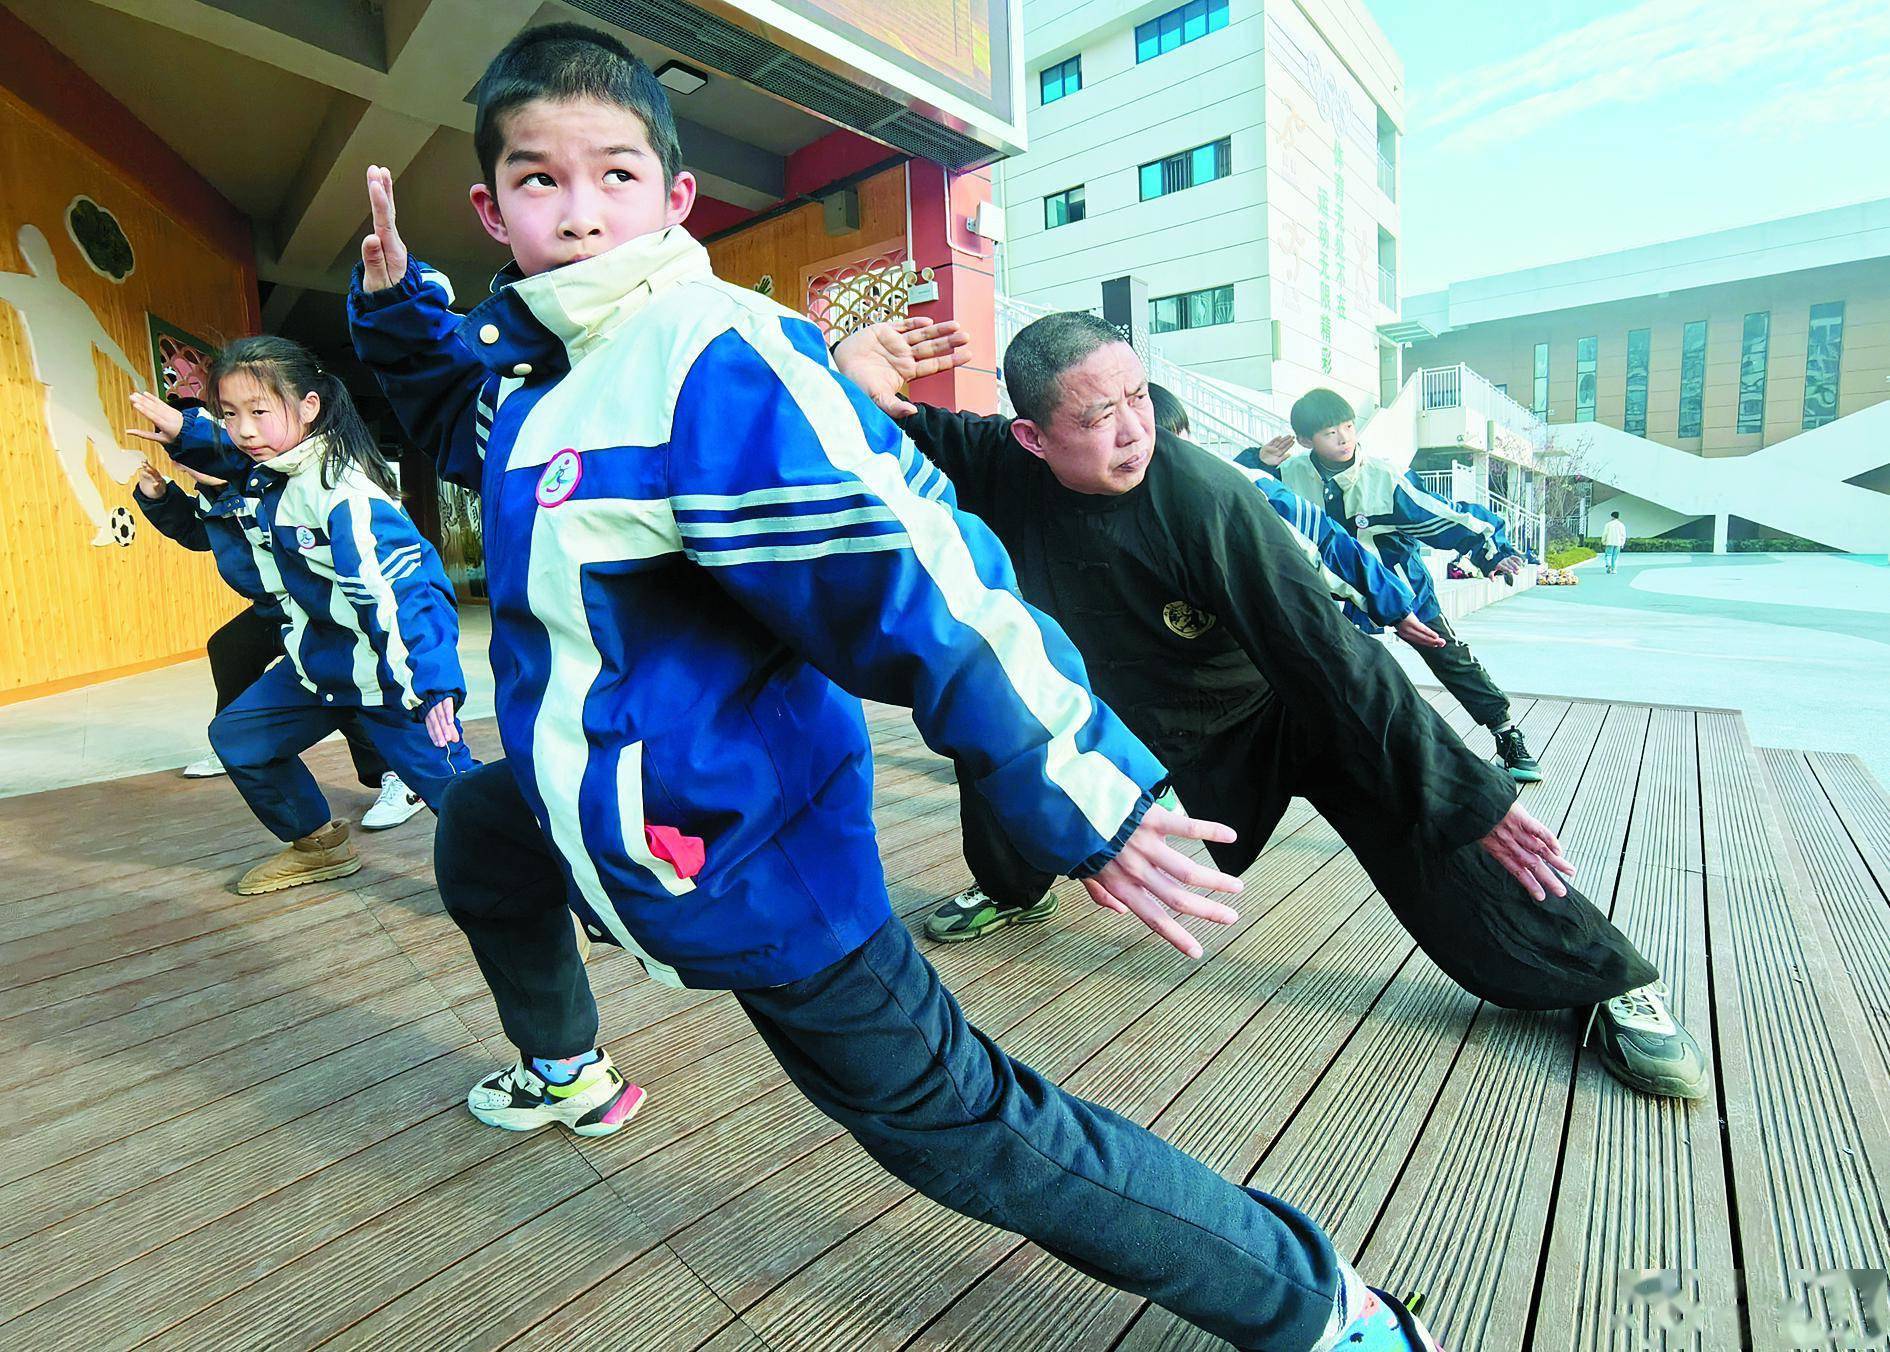 安庆市非遗项目怀宁谢家棍传承人走进校园,为该校武术社团的学生